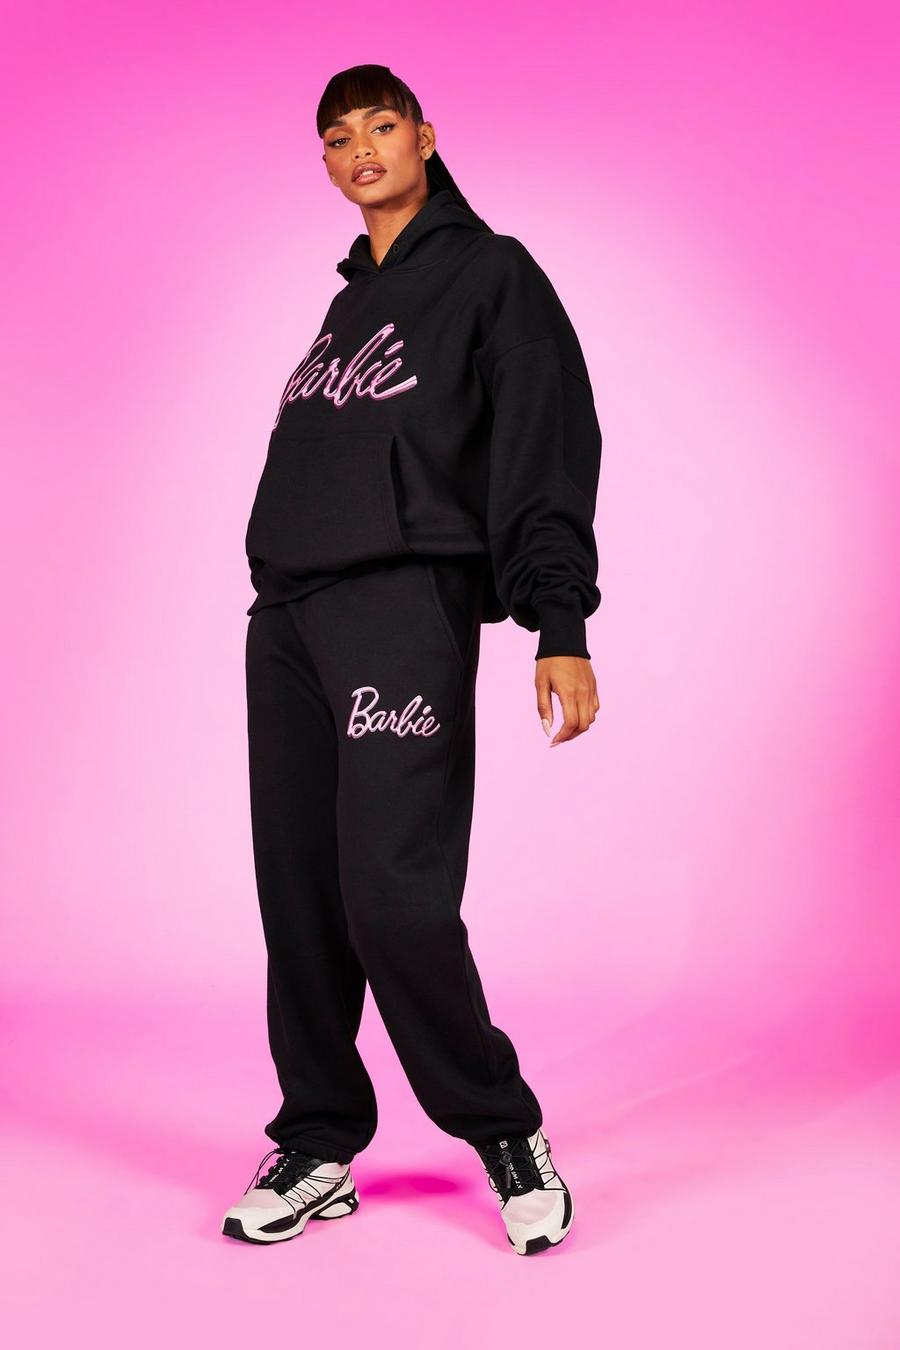 Pantaloni tuta oversize con stampa di slogan Barbie, Black negro